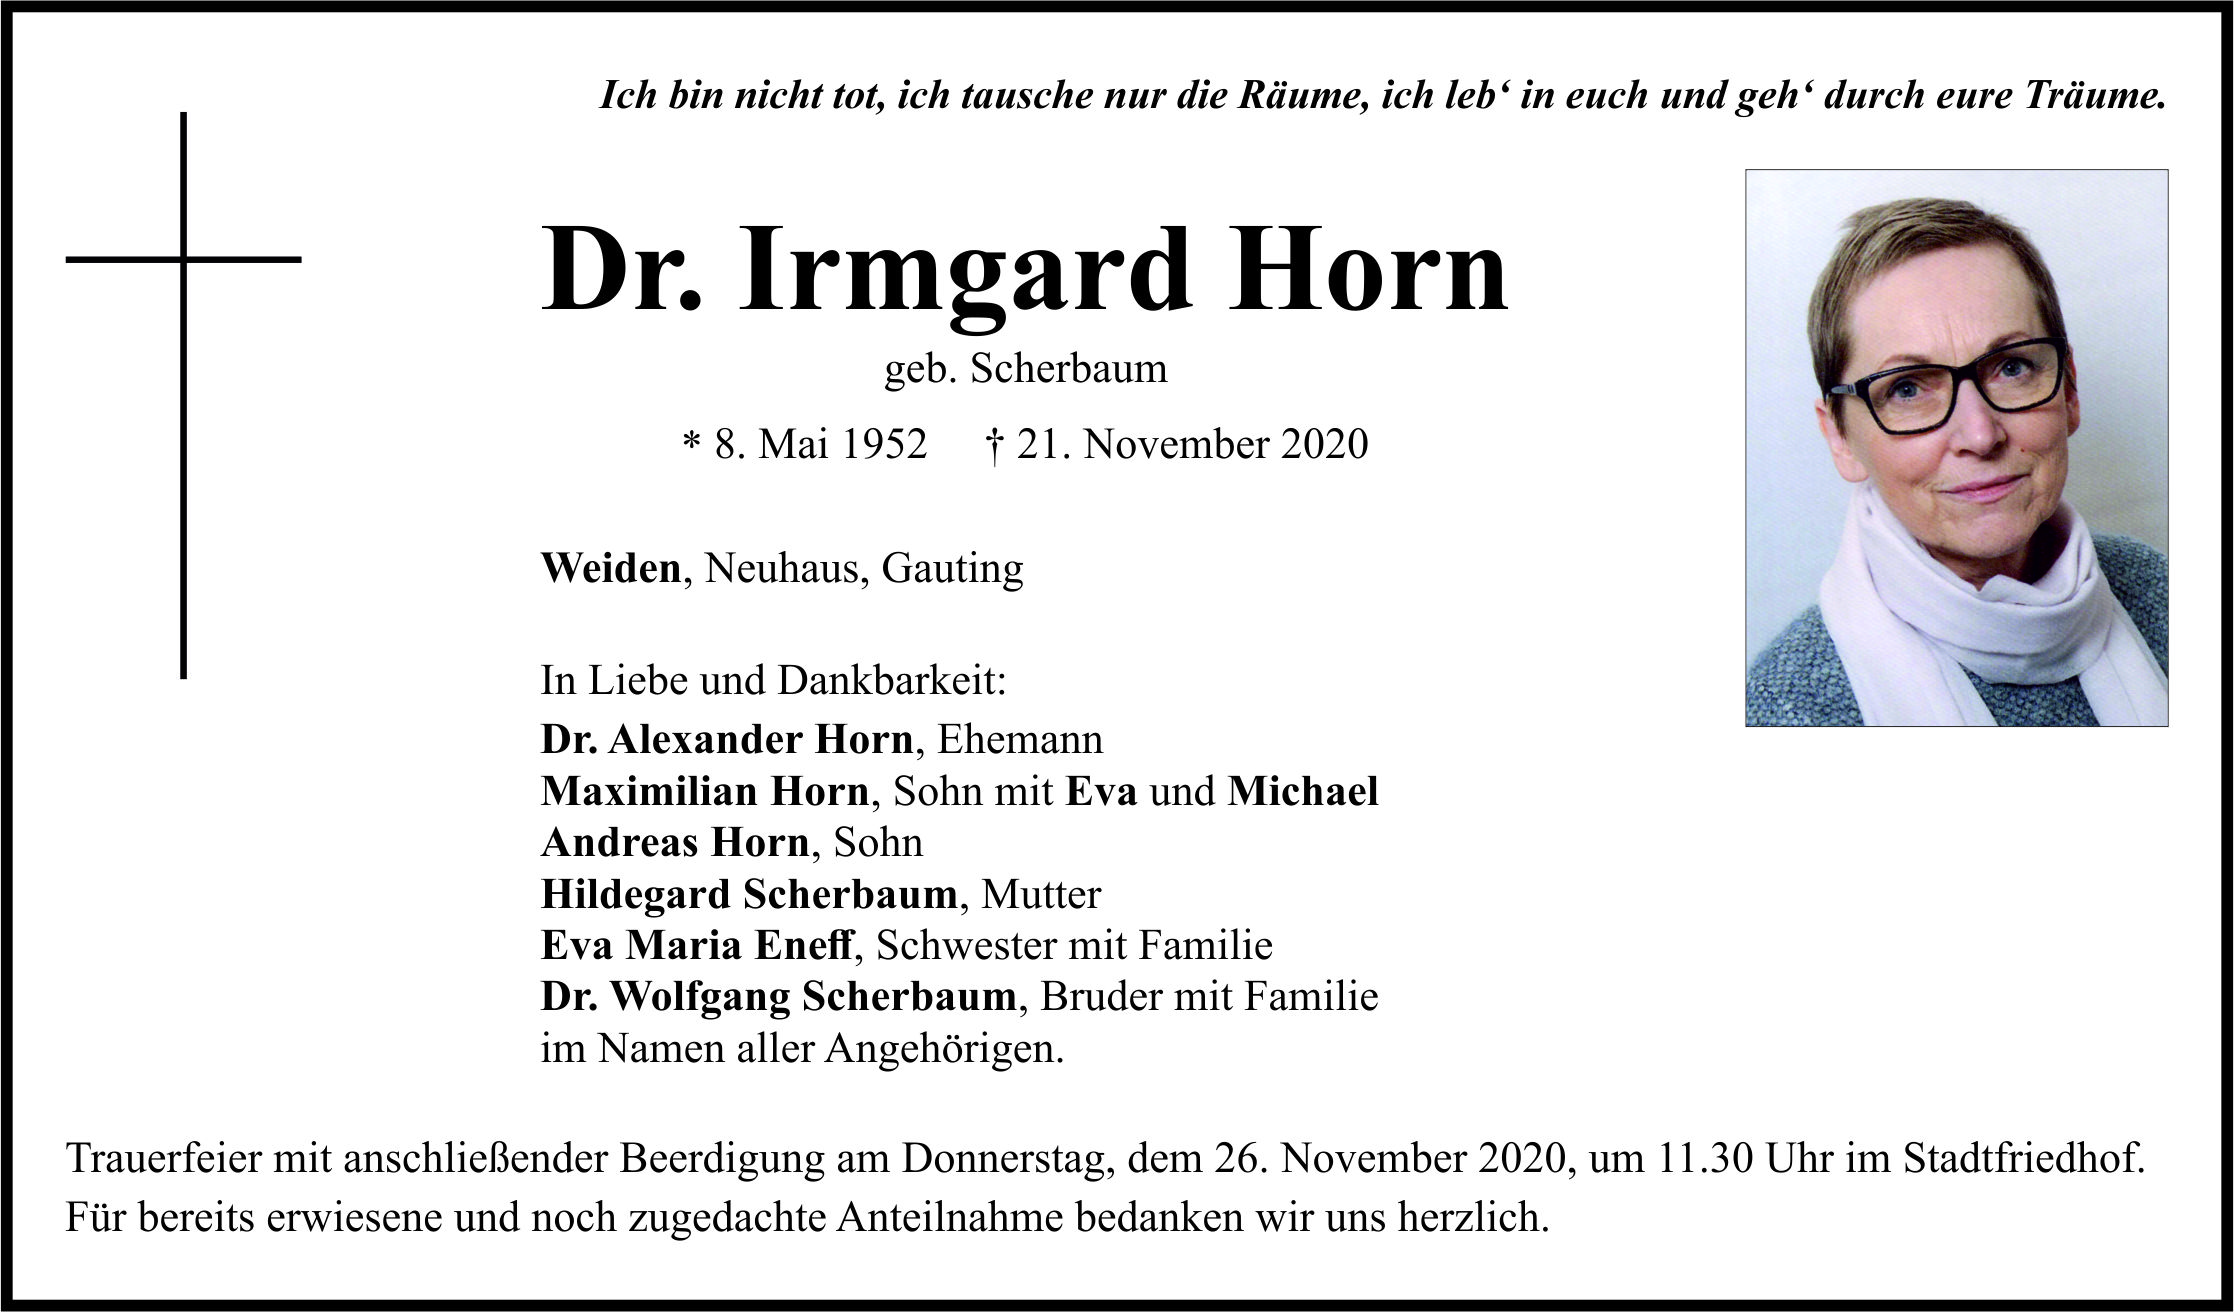 Traueranzeige Dr. Irmgard Horn, Weiden